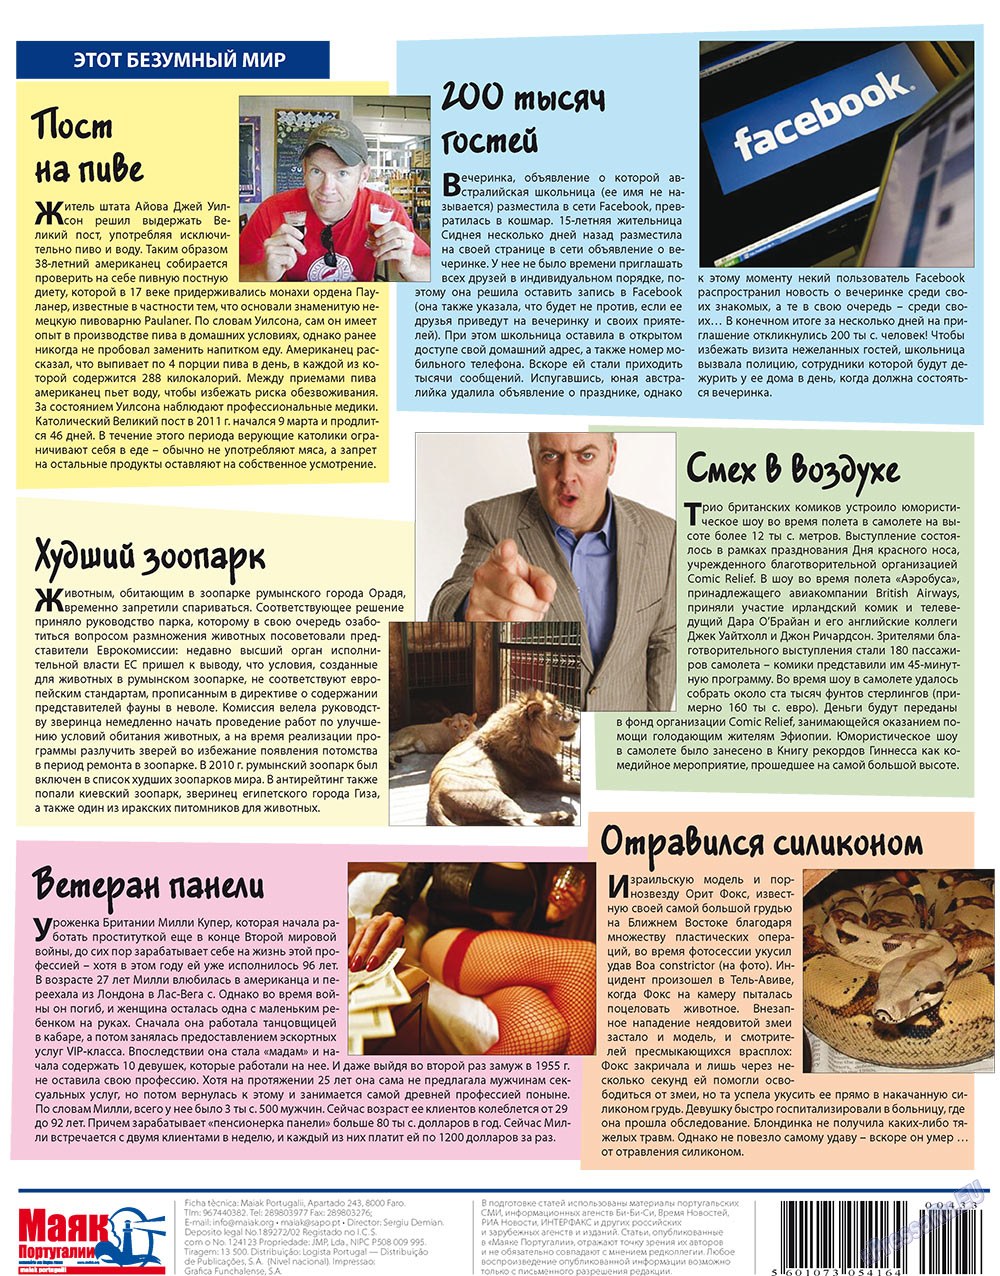 Маяк Португалии (газета). 2011 год, номер 433, стр. 40